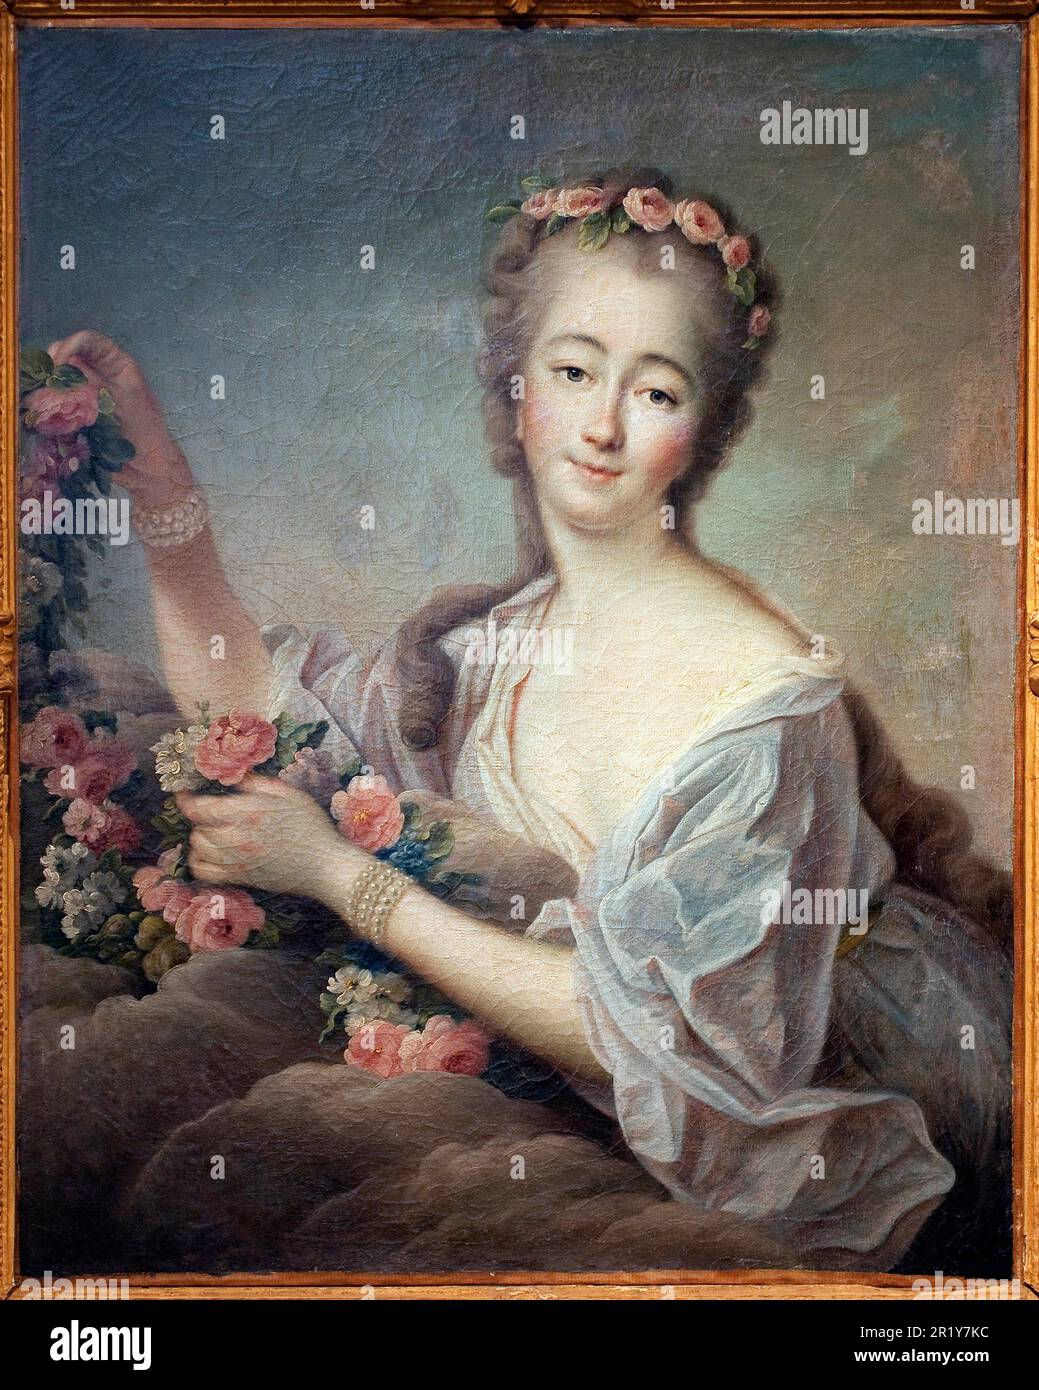 Portrait de Madame du Barry en Flore (Jeanne Becu, comtesse (ou madame) du Barry (1743-1793) - Peinture de Francois Hubert Drouais (1727-1775), huile sur toile, 1774 - Art francais 18e siecle - Musee des Beaux Arts d'Agen Foto Stock